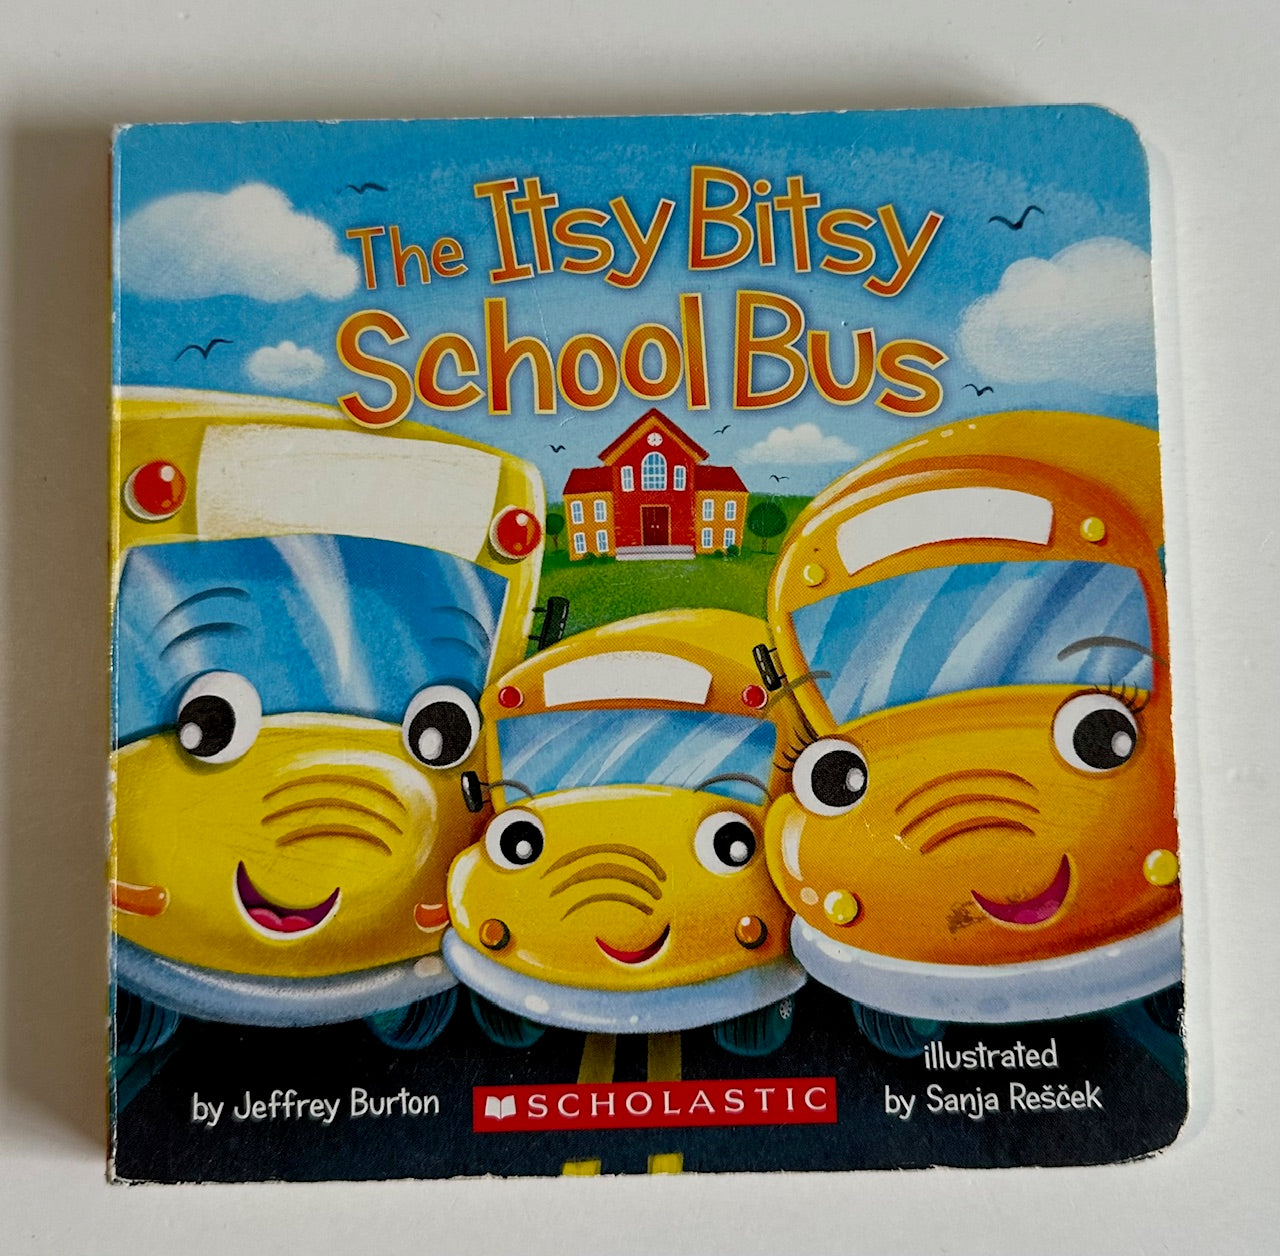 "The Itsy Bitsy School Bus"